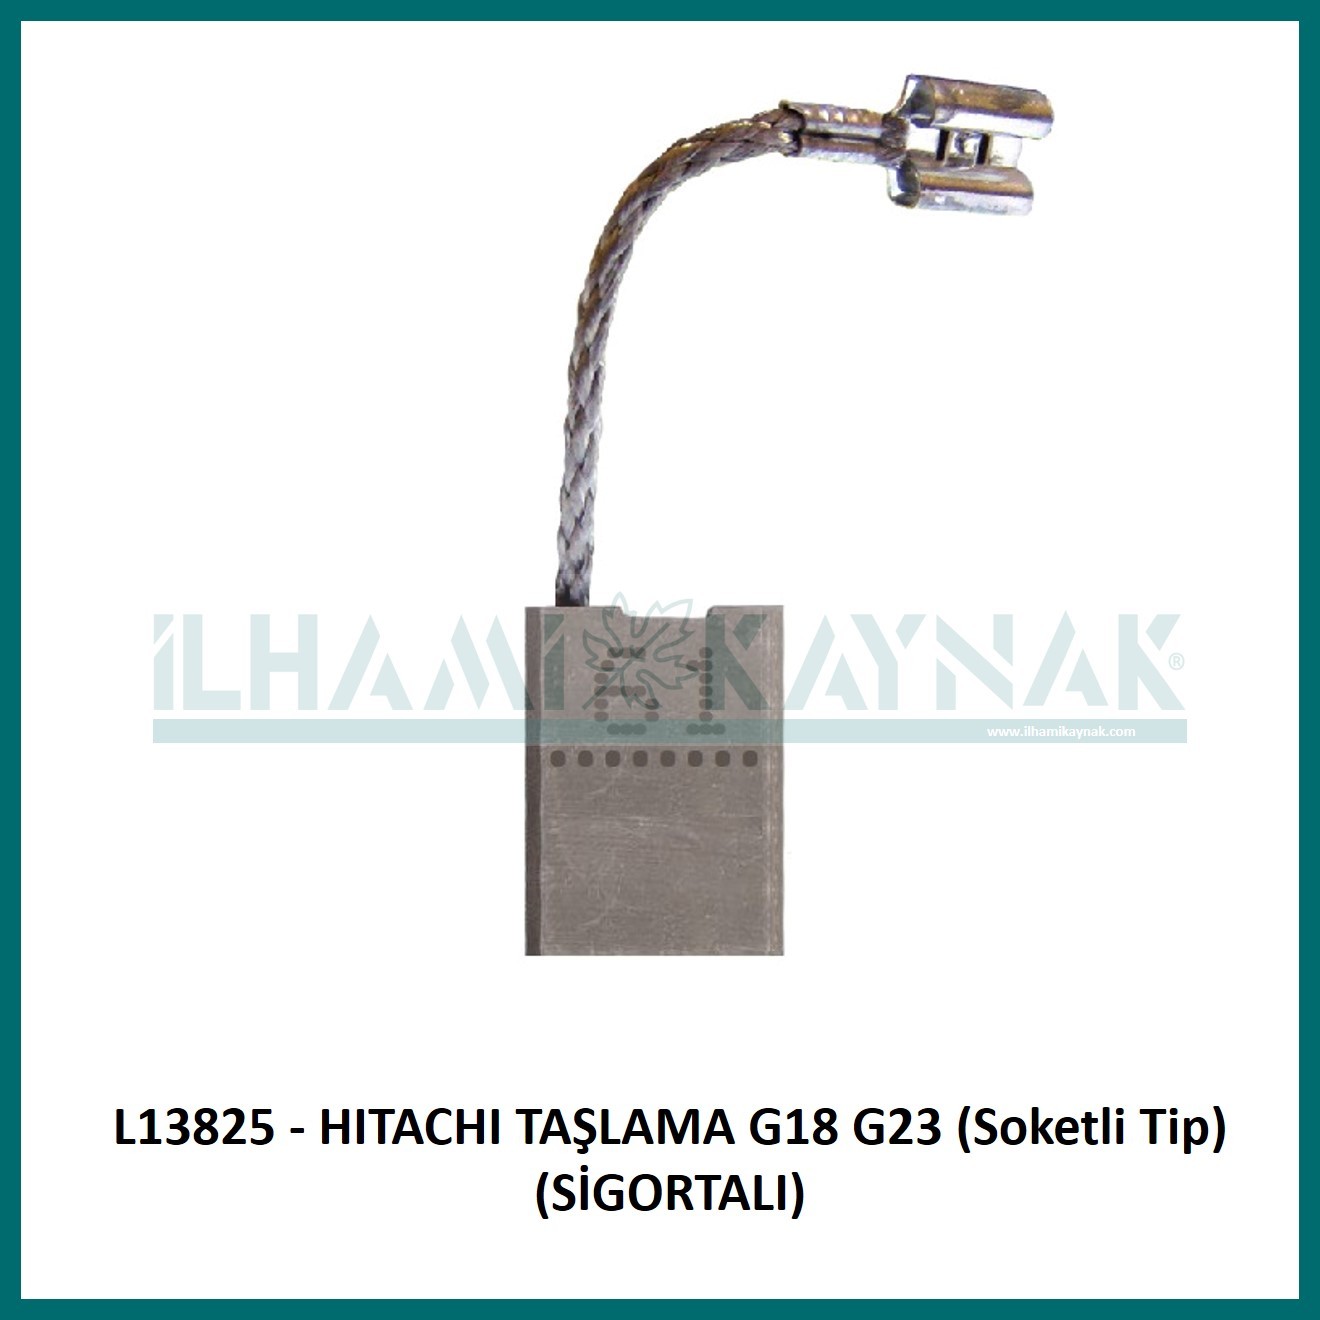 L13825 - HITACHI TAŞLAMA G18 G23 (Soketli Tip) (SİGORTALI) - 7*17*23 mm - 100 Adet